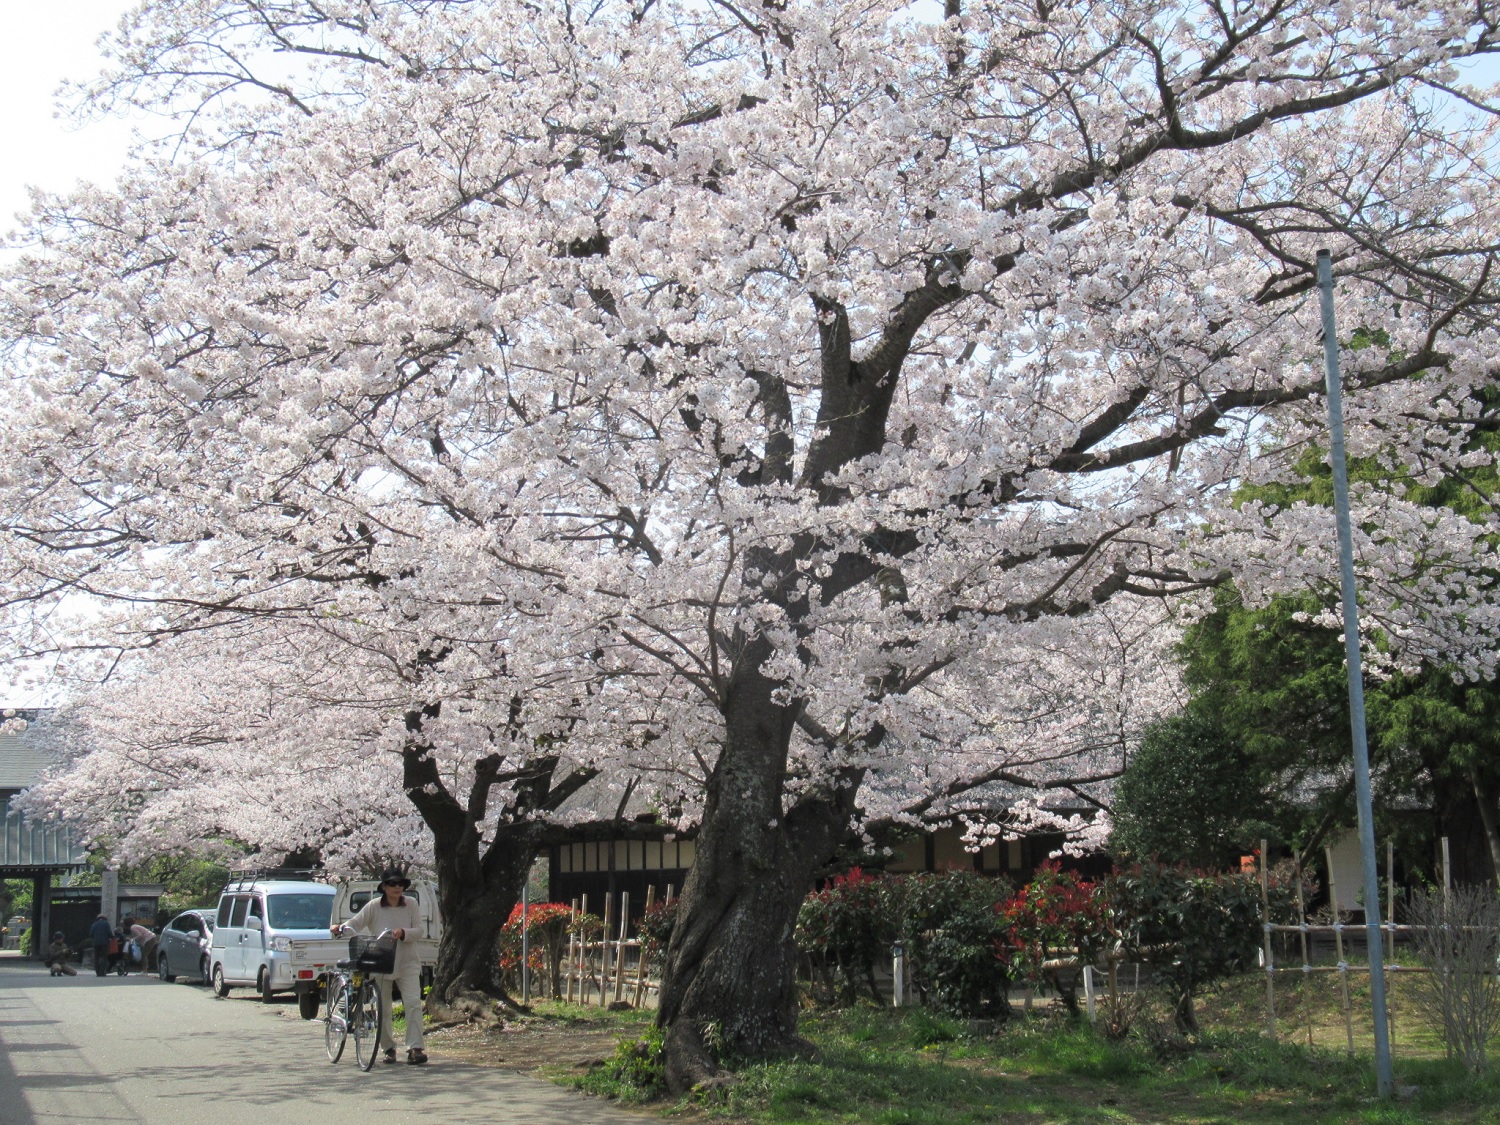 Cherry blossoms near Joken Temple